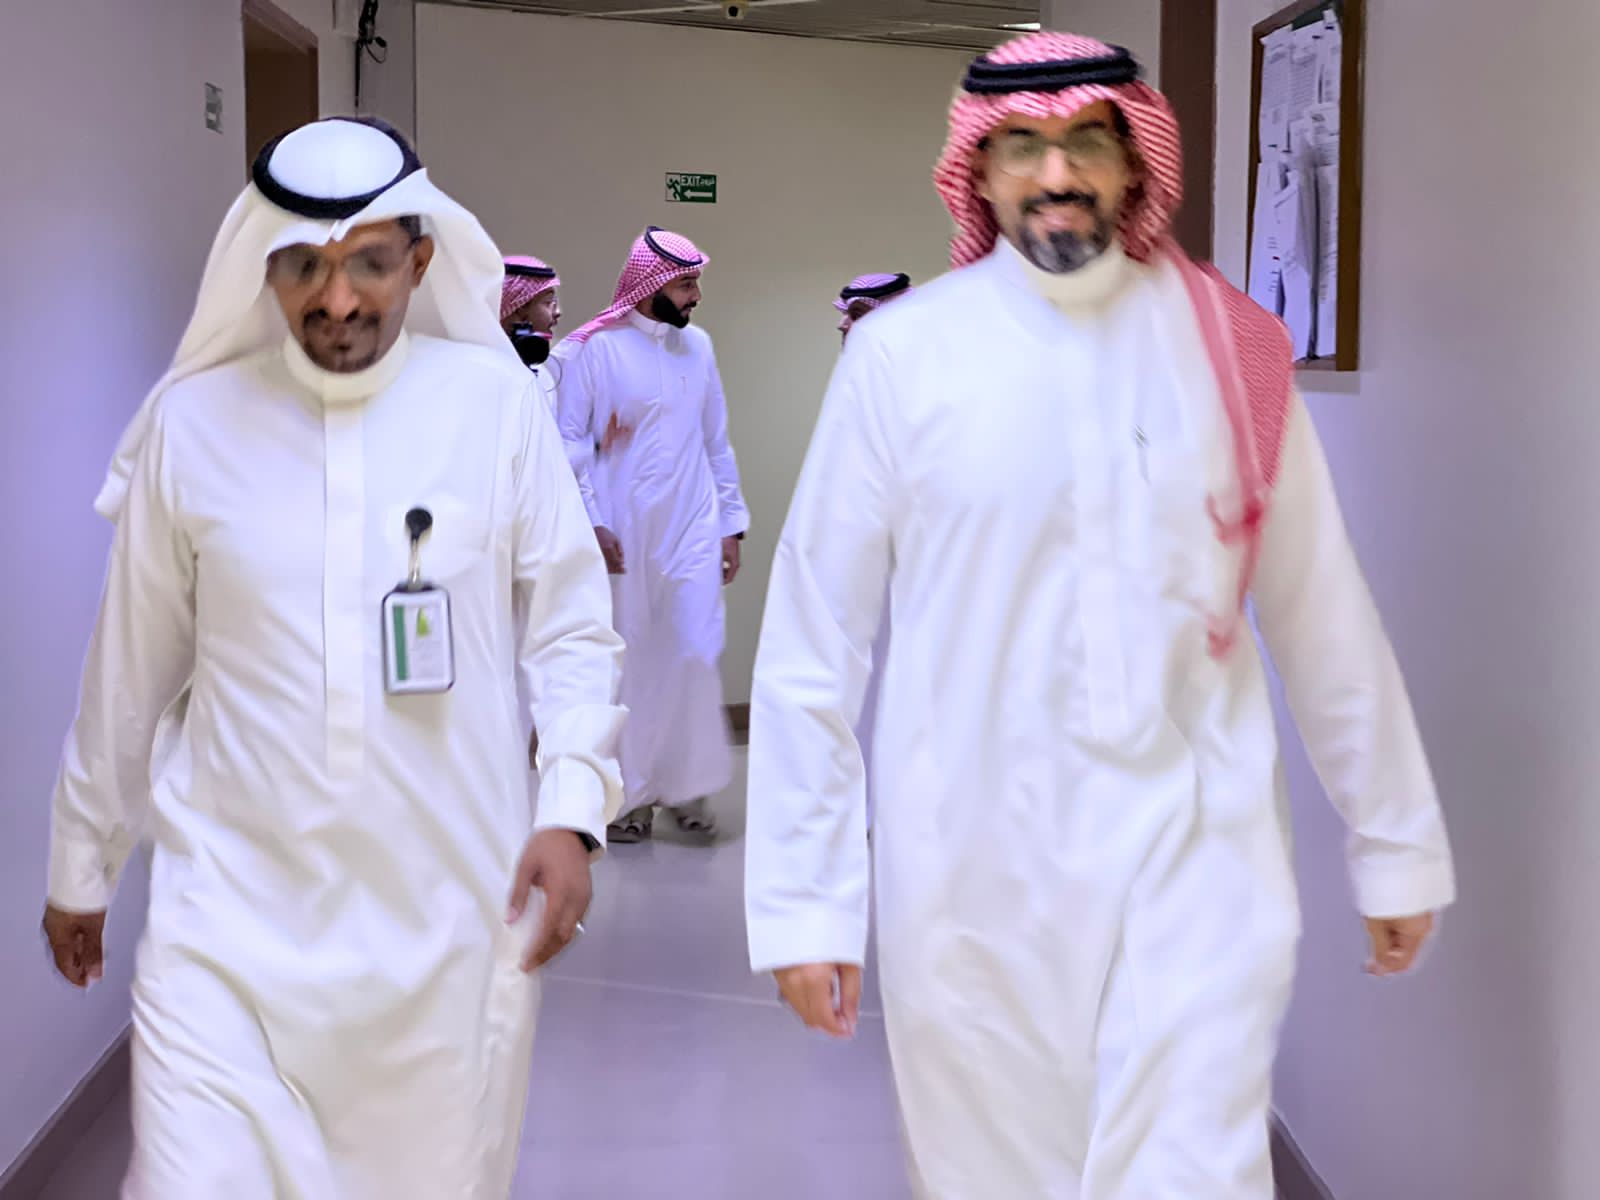 فرع هيئة الصحفيين السعوديين بالمدينة المنورة يزور مركز تلفزيون بالمنطقة